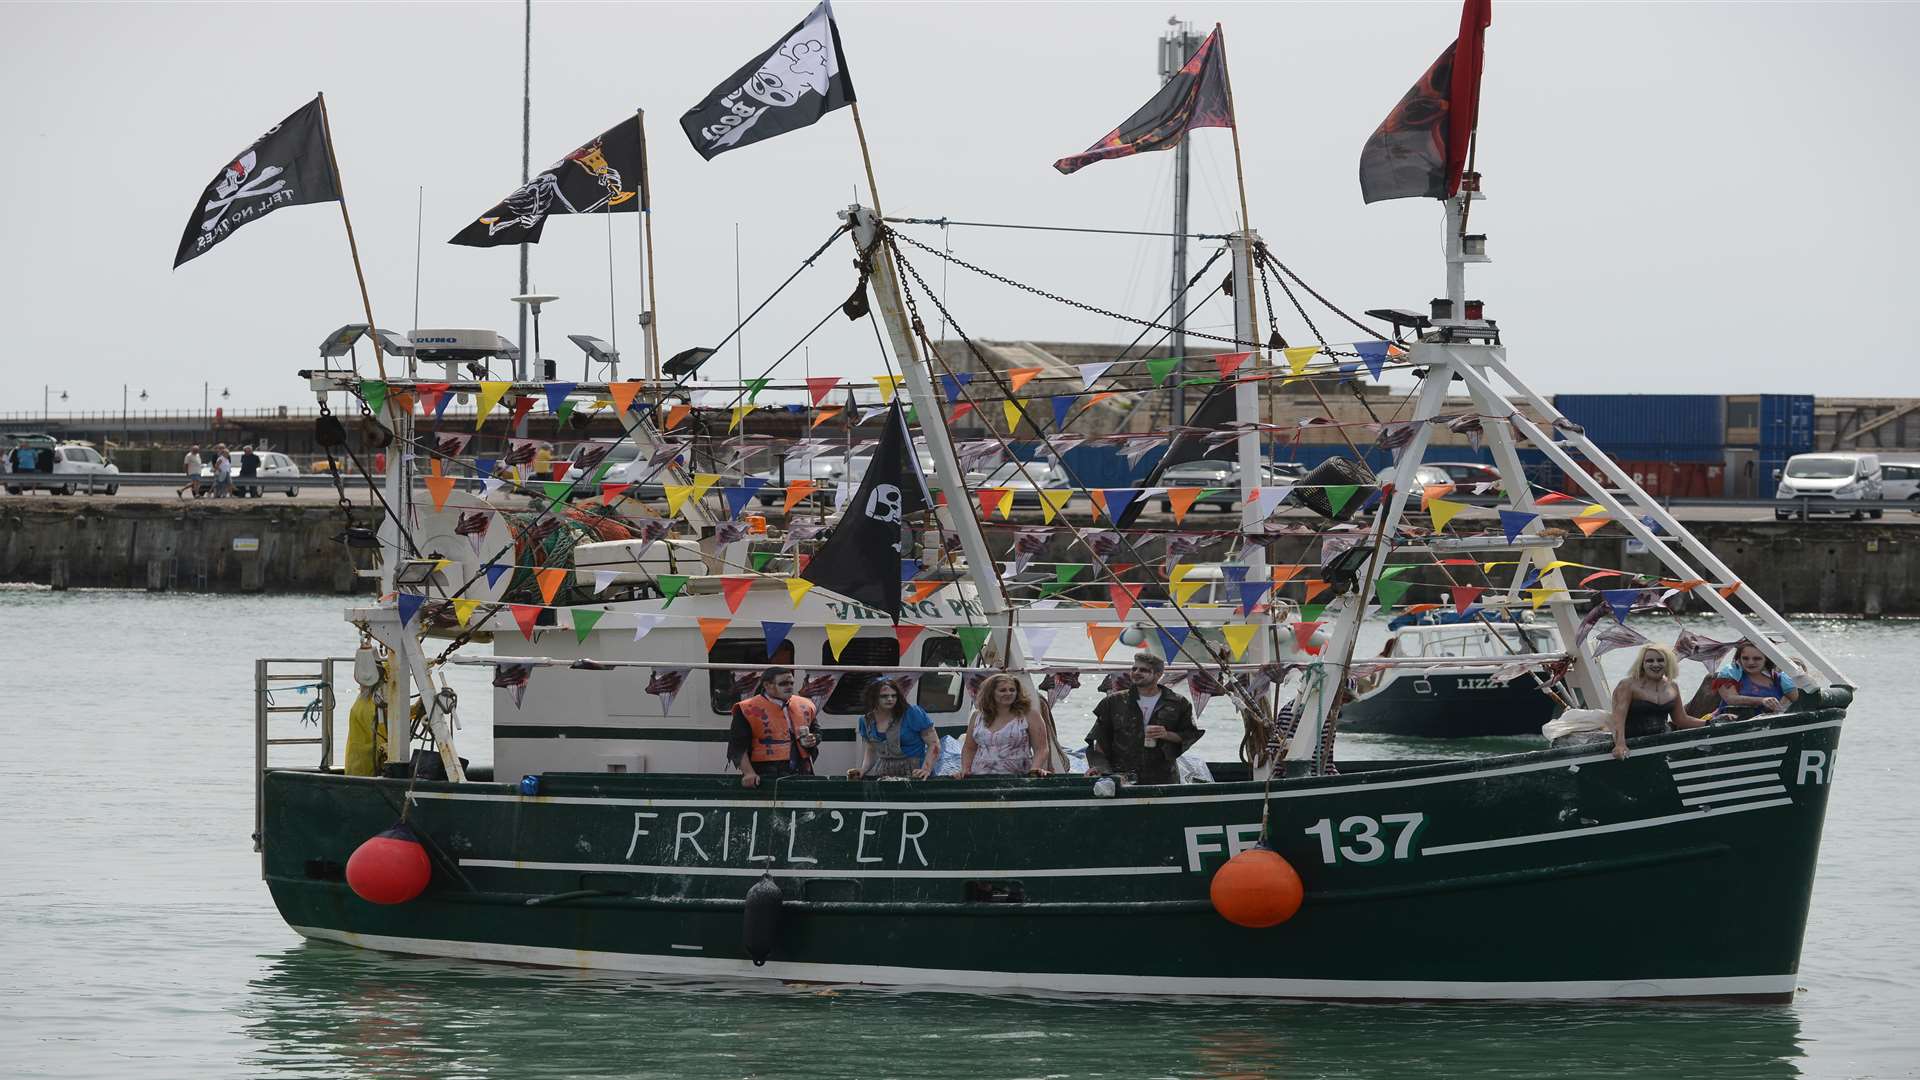 The annual trawler race